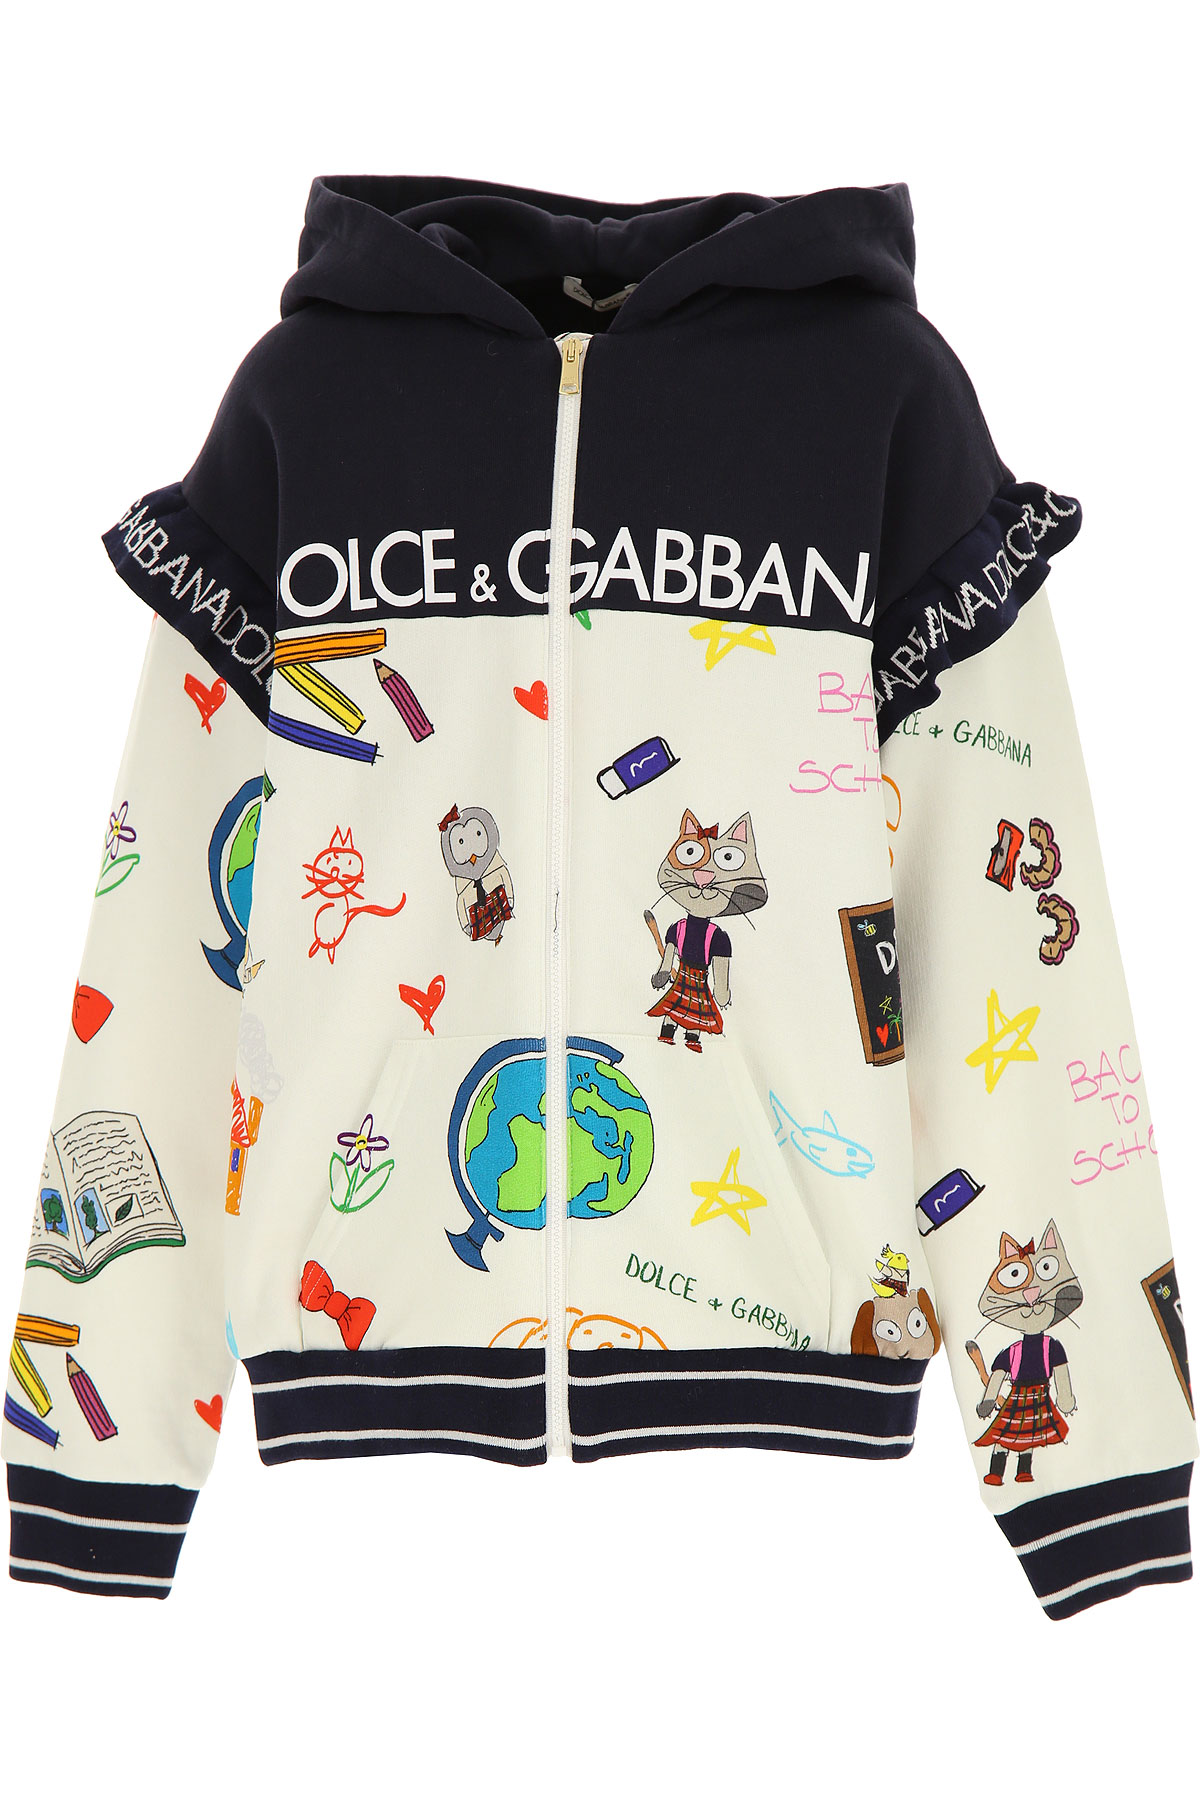 Dolce & Gabbana Kinder Sweatshirt & Kapuzenpullover für Mädchen Günstig im Sale, Creme, Baumwolle, 2017, 4Y 8Y